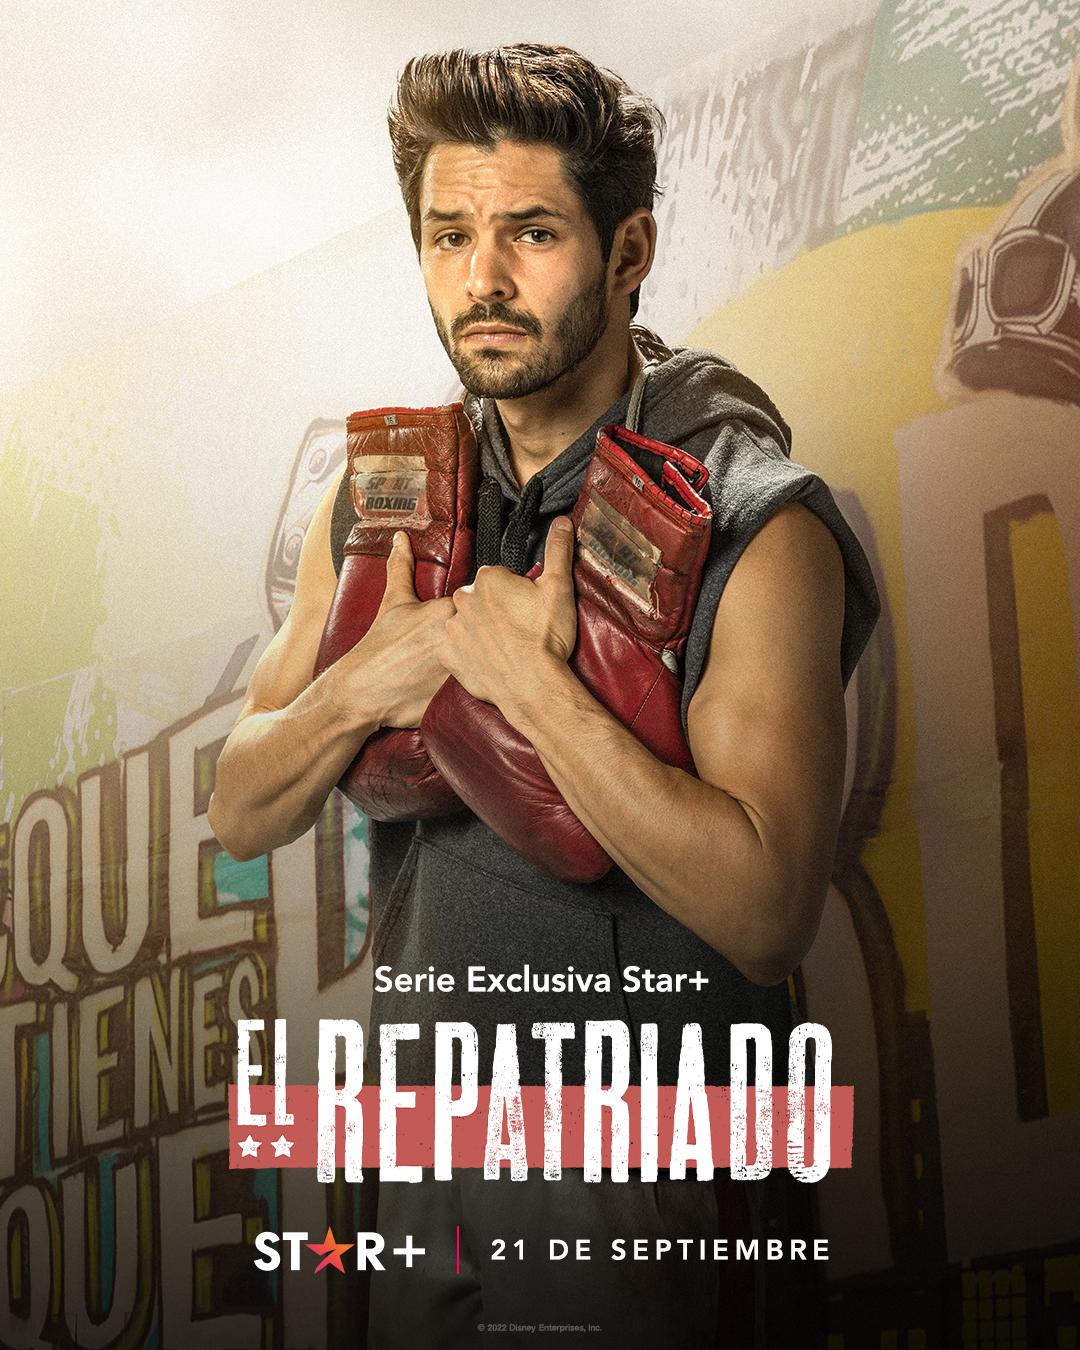 TV ratings for Repatriated (El Repatriado) in Portugal. Star+ TV series